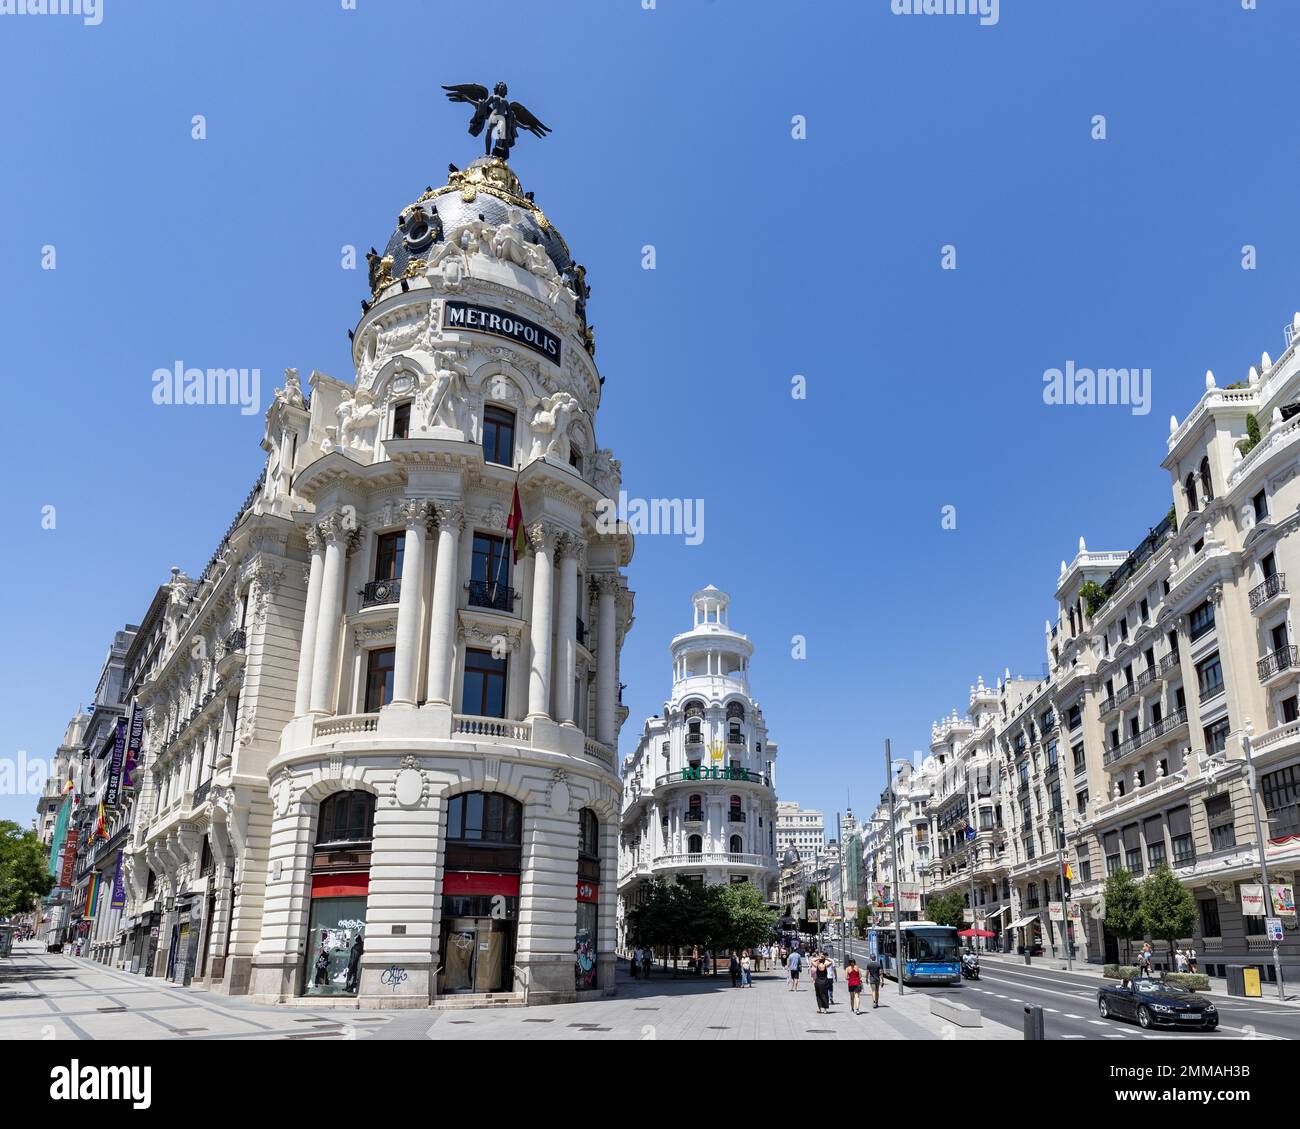 Metropolis House, Edificio Metropolis, Neo-Romanesque, Intersection of Calle de Alcala and Gran Via, Madrid, Capital, Spain Stock Photo